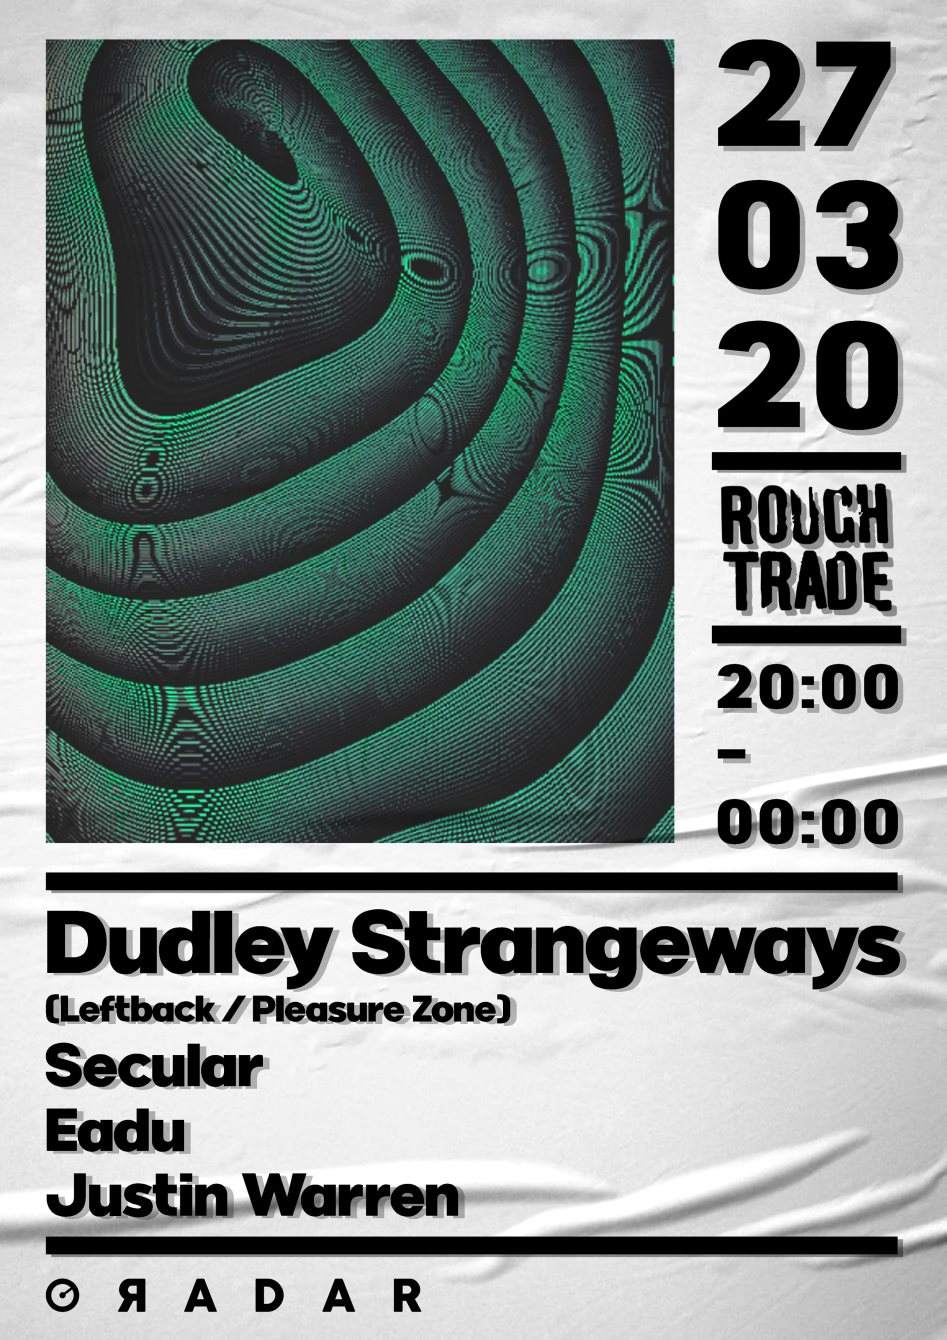 Radar presents: Dudley Strangeways - フライヤー裏